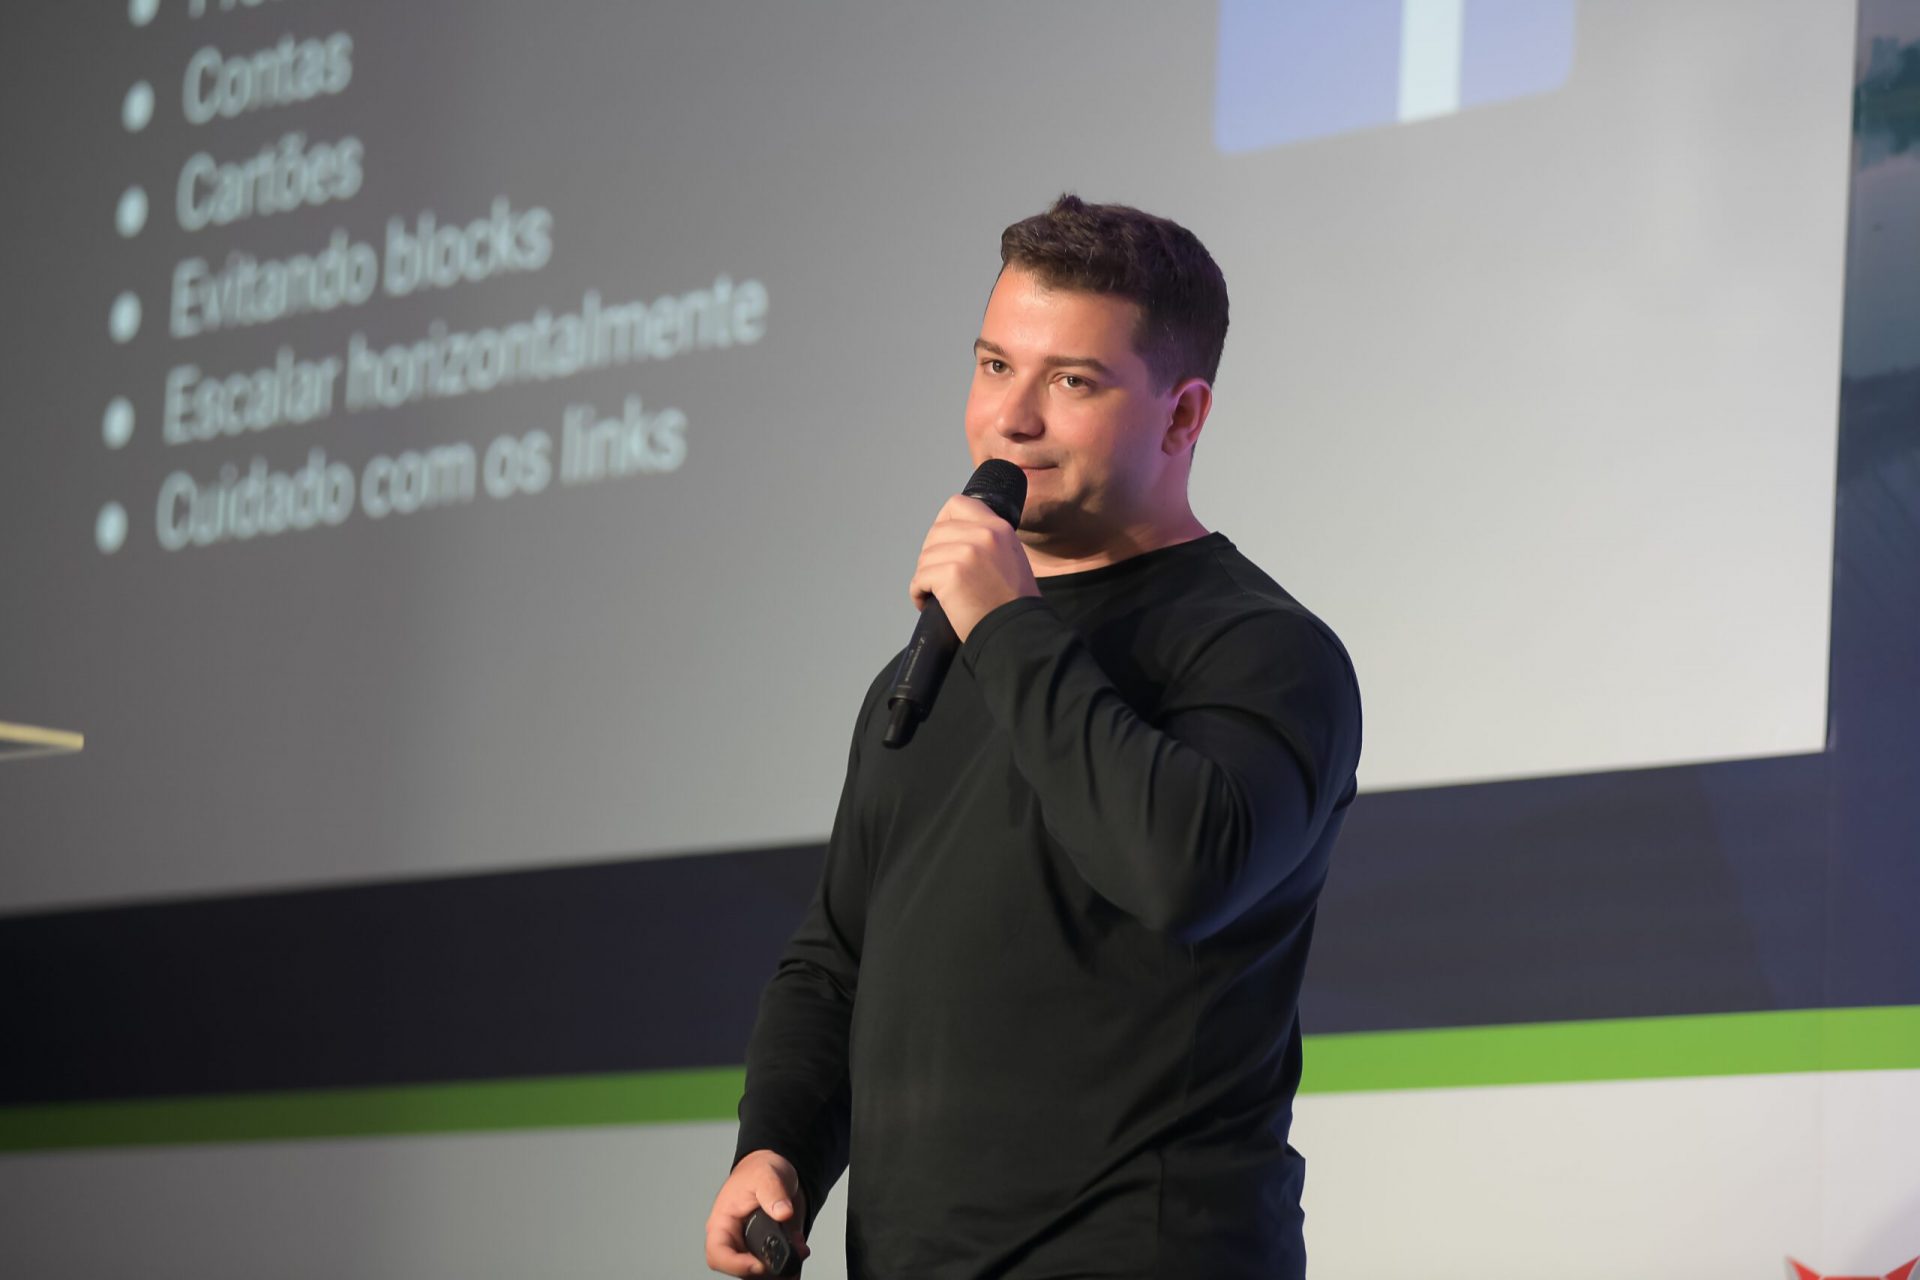 João Pedro palestrando na Afiliados Brasil 2019